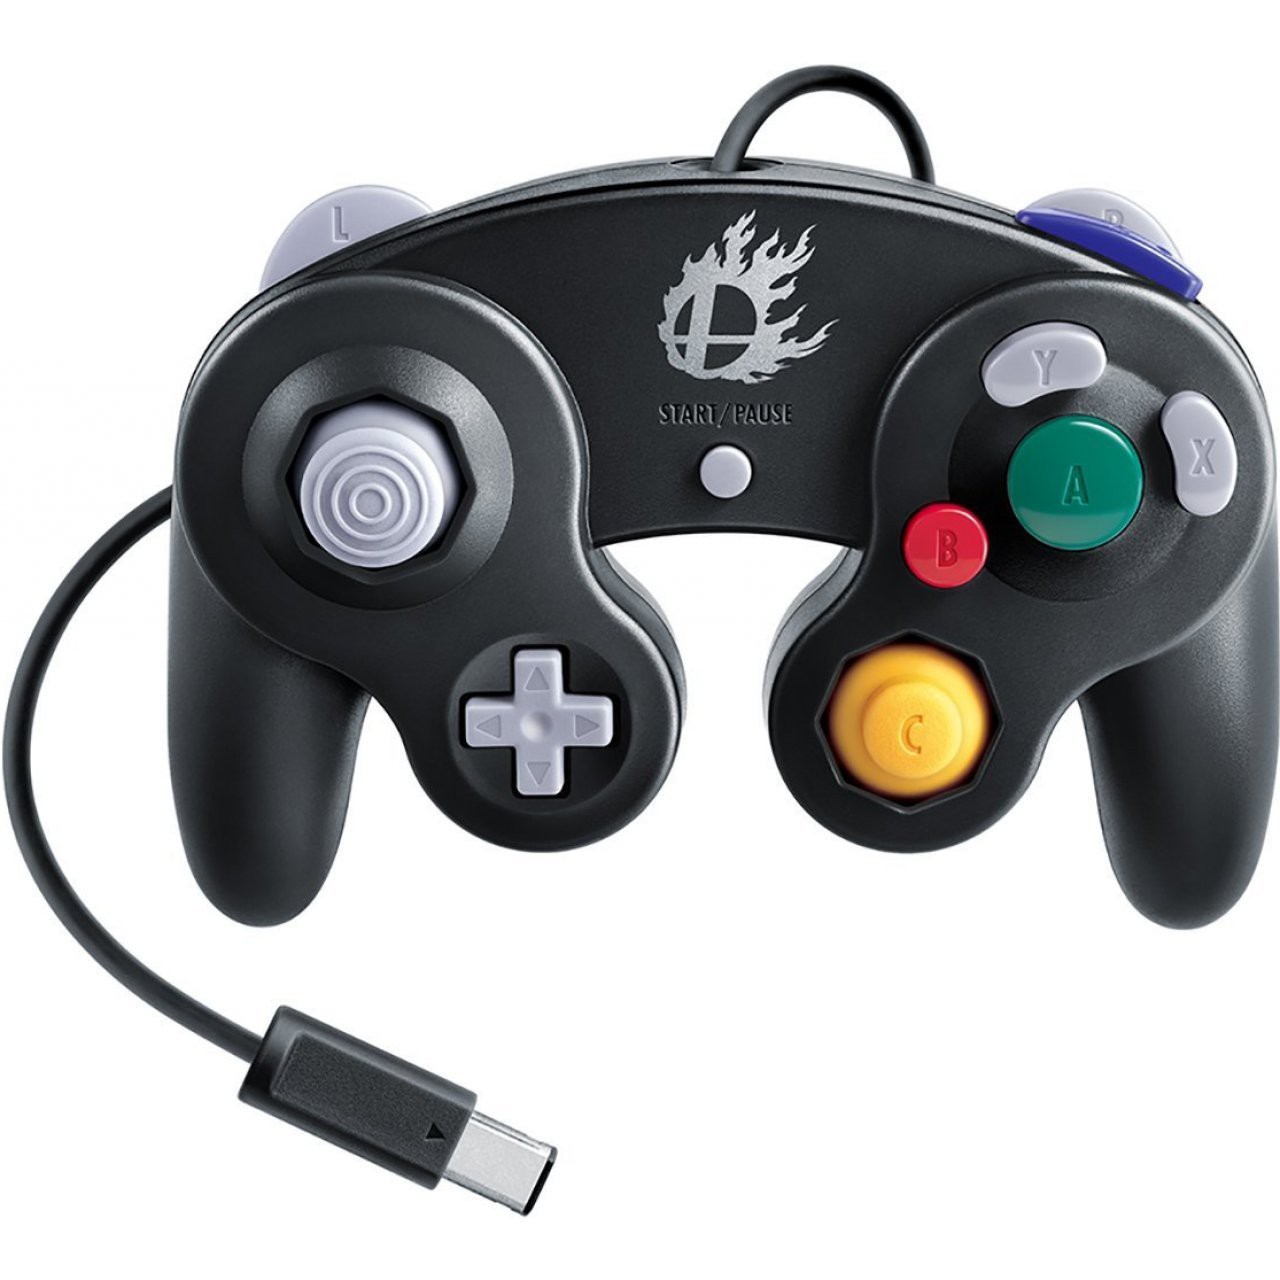 Originele Gamecube Controller - Super Smash Bros Wii U Edition - Gamecube Hardware